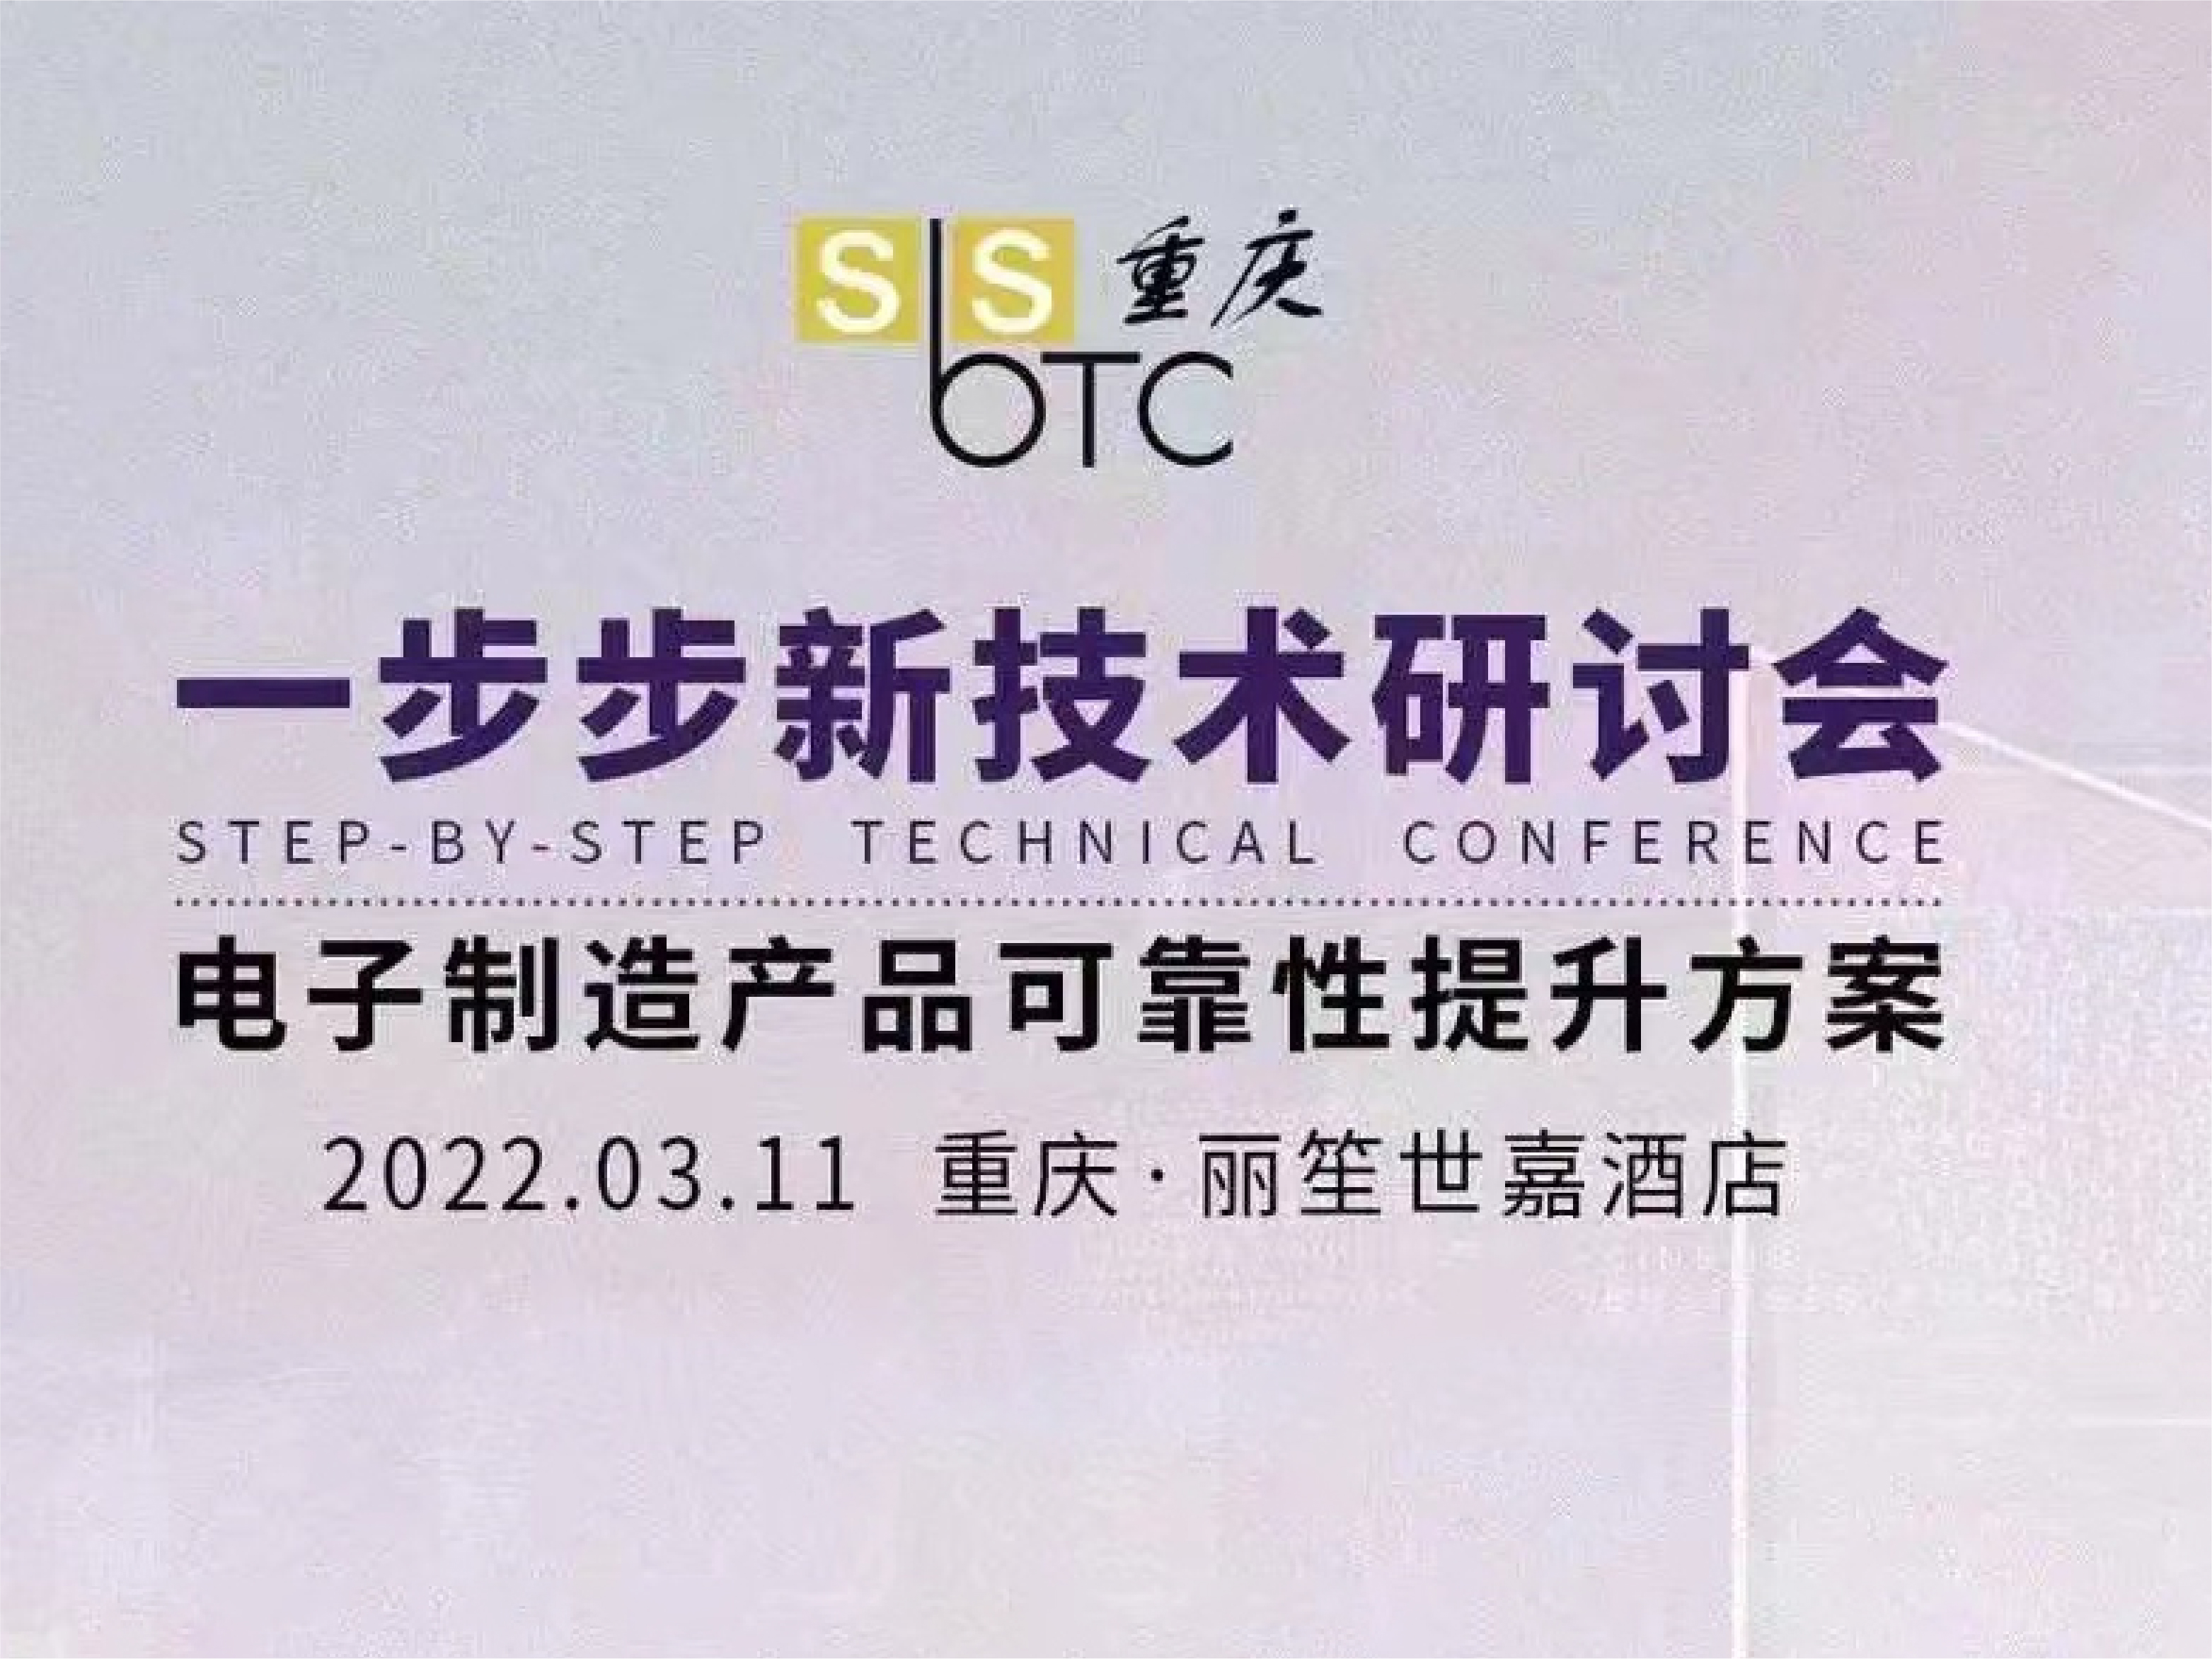 Futuro ATT, paso a paso nueva tecnología Seminario de la estación de Chongqing